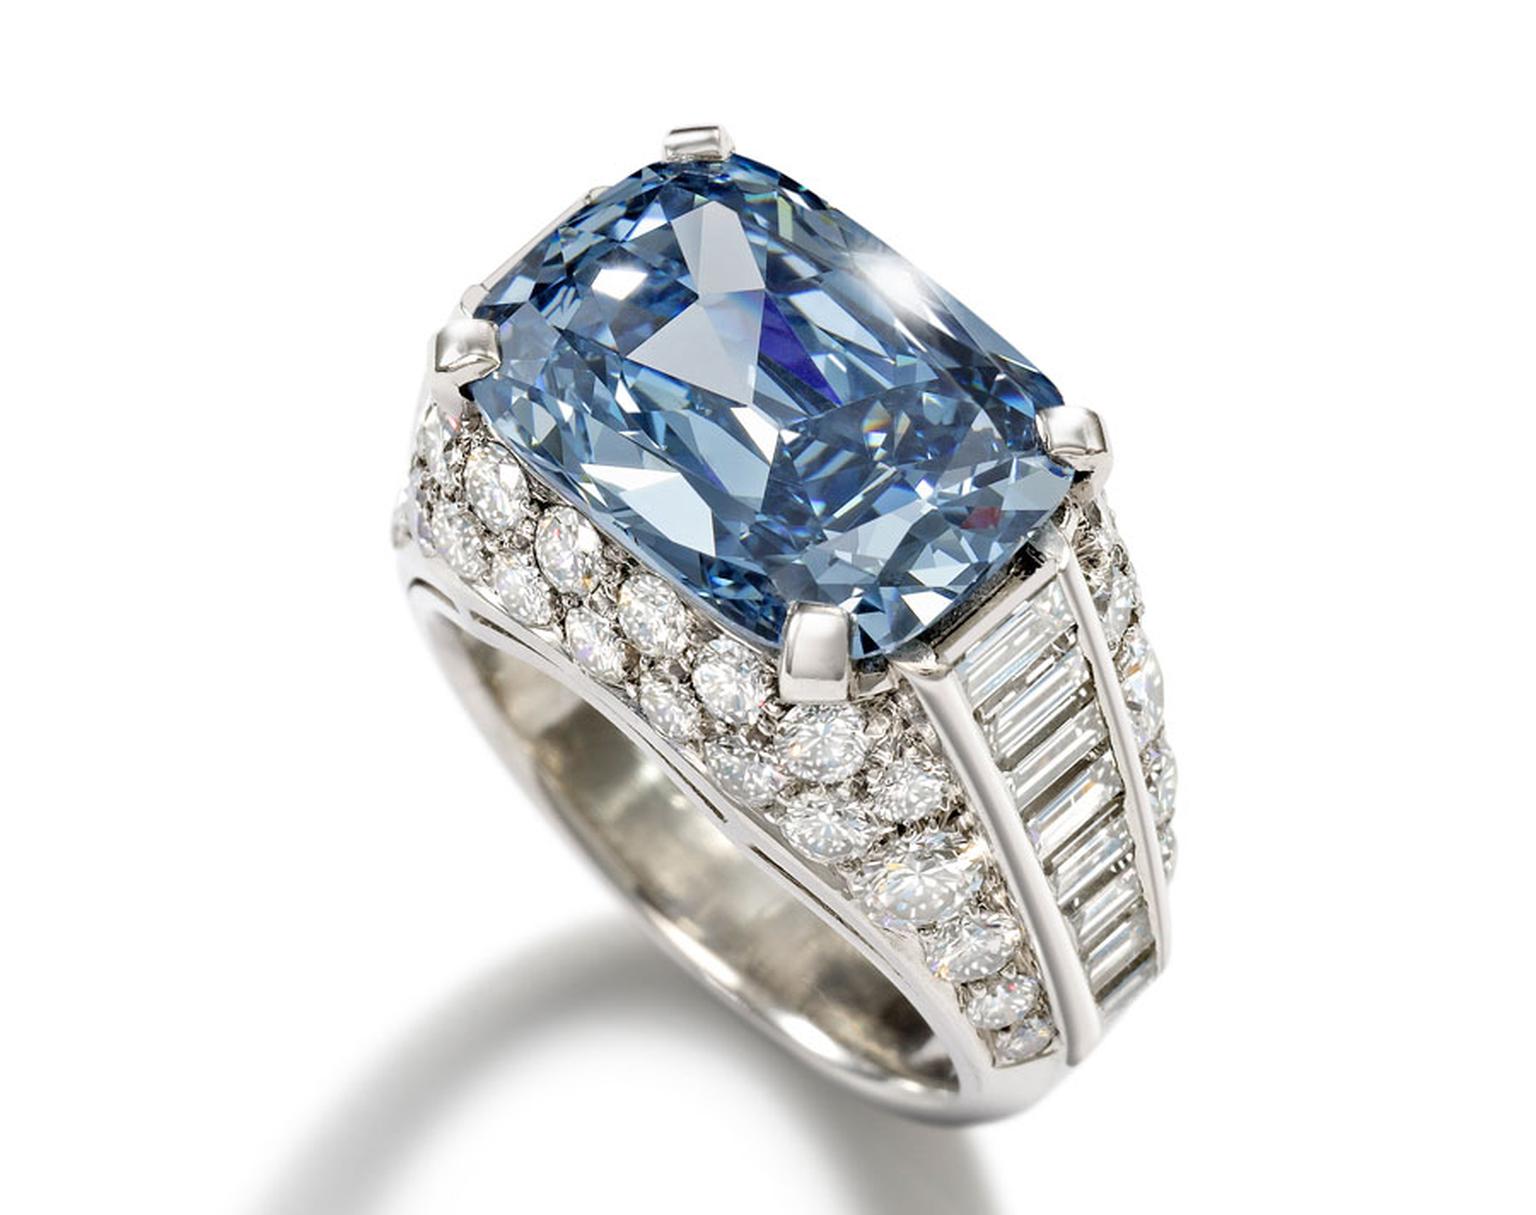 Rare blue diamond Bulgari ring sold to 